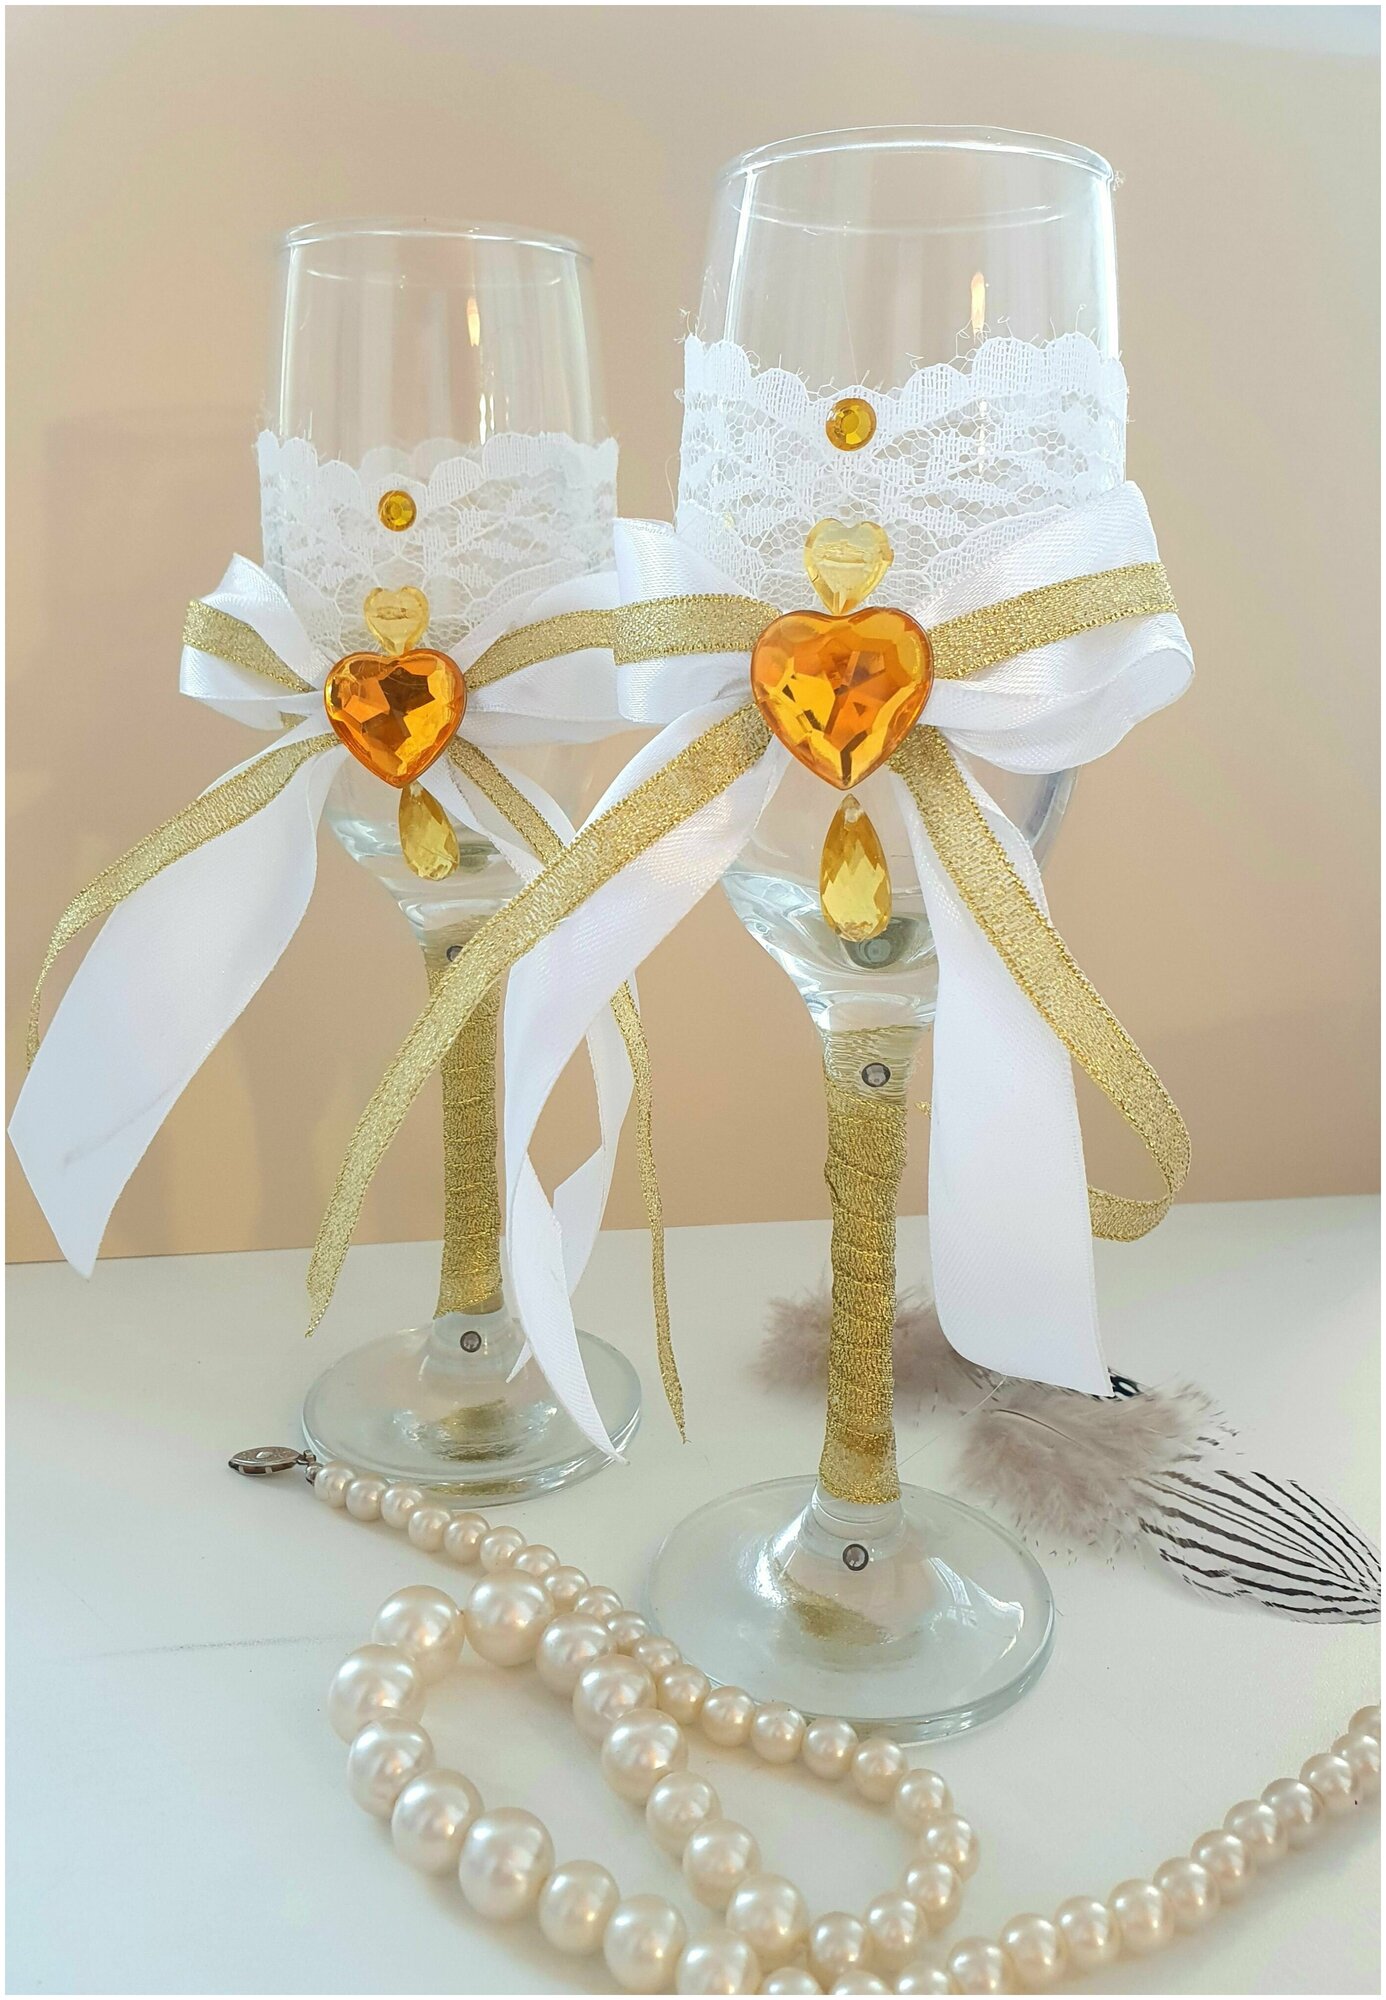 Бокалы свадебные "Молодожены", золото / фужеры для шампанского/ набор бокалов на свадьбу +Подарок 2 открытки/приглашения.